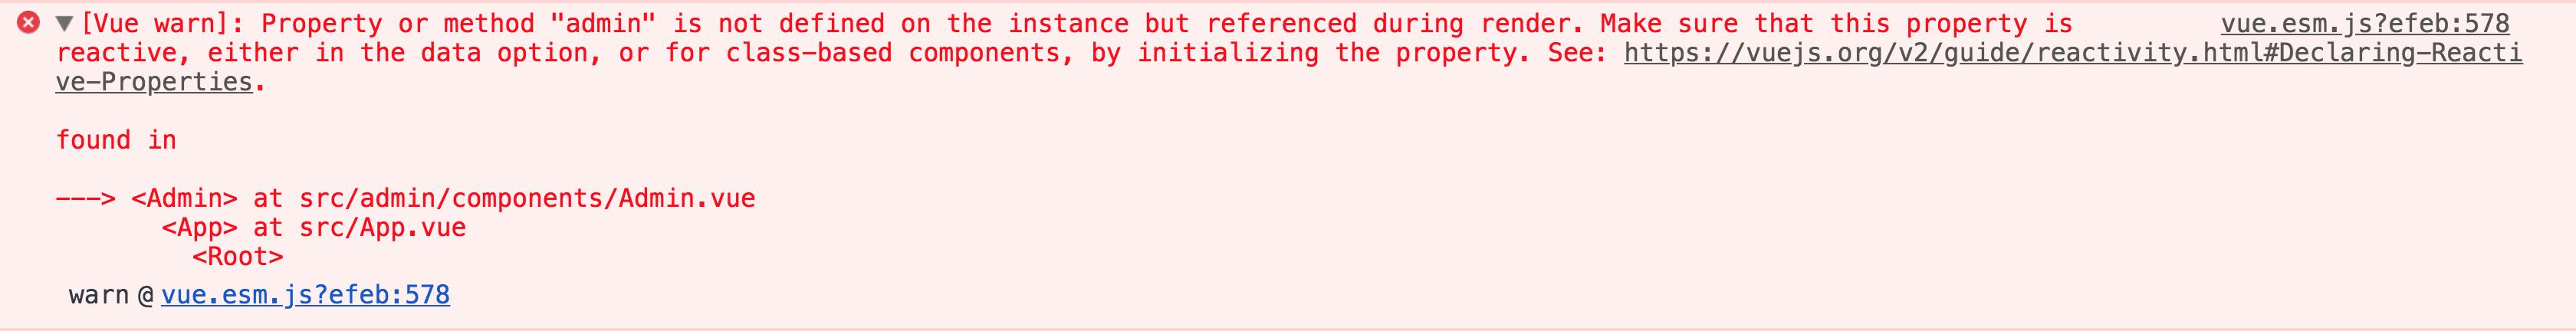 Vue human & debugging friendly error message